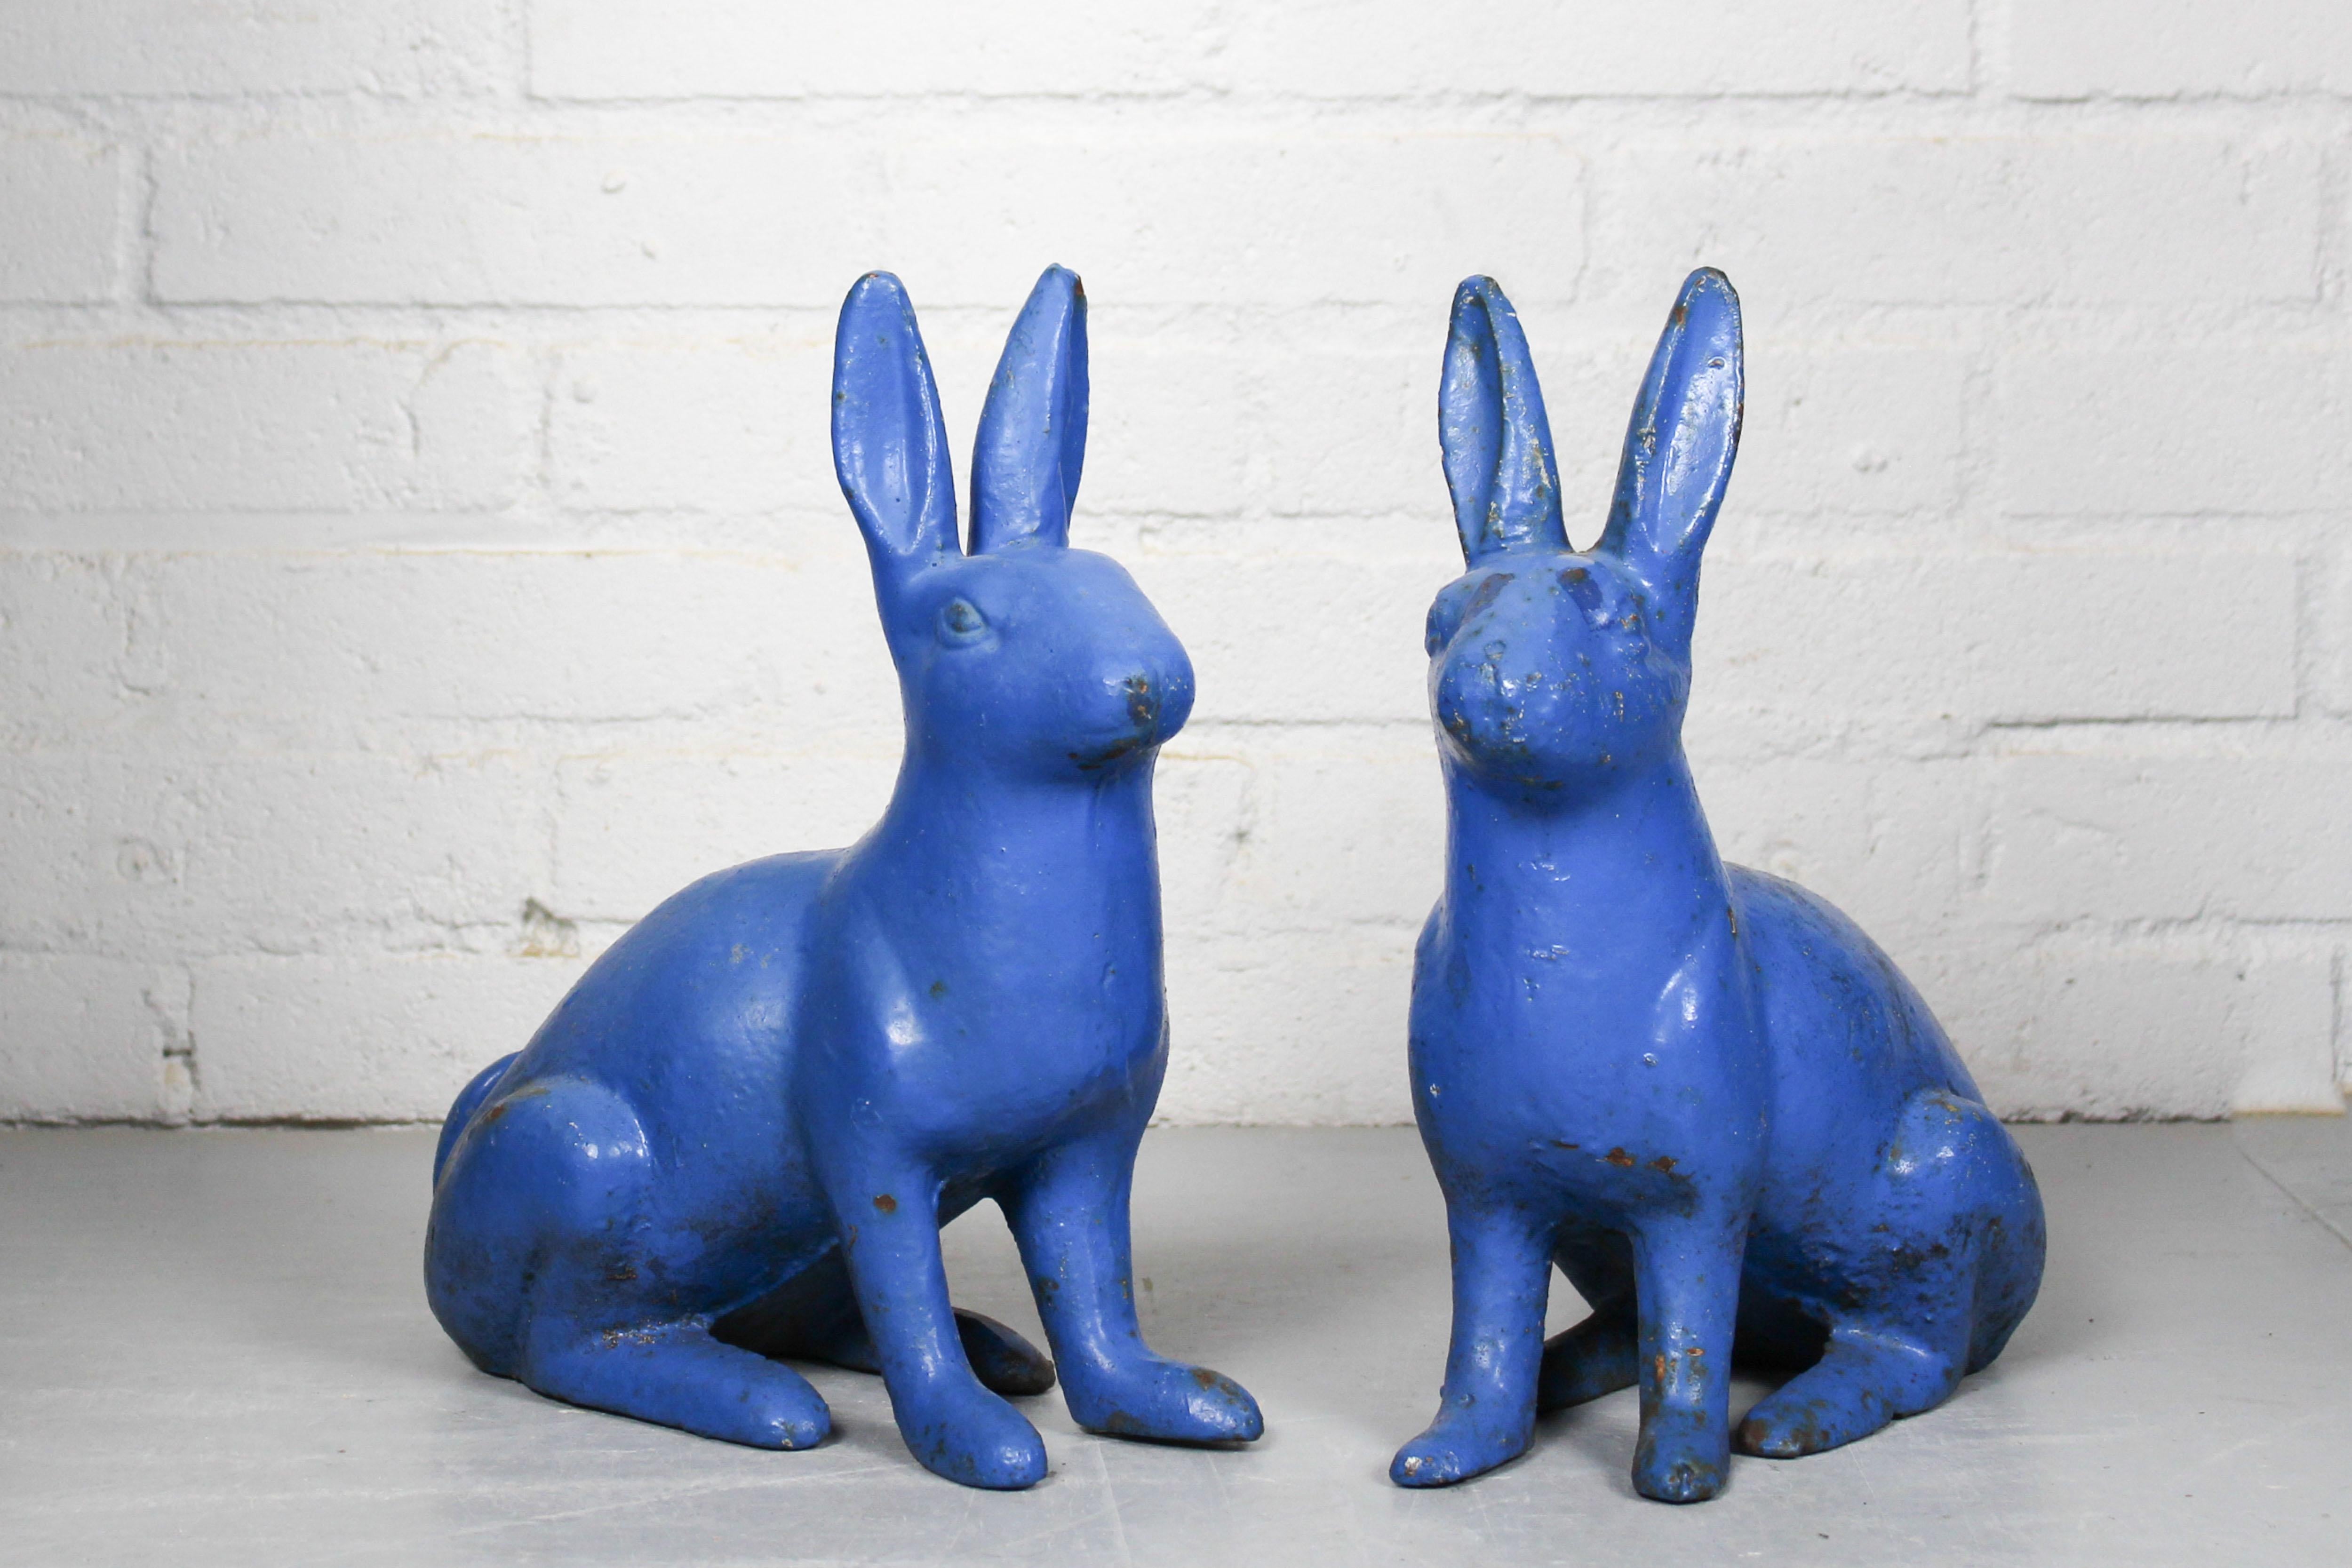 Ein Paar antike Türstopper aus Gusseisen in Form von sitzenden blauen Kaninchen, die an Osterhasen erinnern, hergestellt um 1890.  

Abmessungen: Jedes Kaninchen ist 14 cm breit, 26 cm lang und 28,5 cm hoch. 
